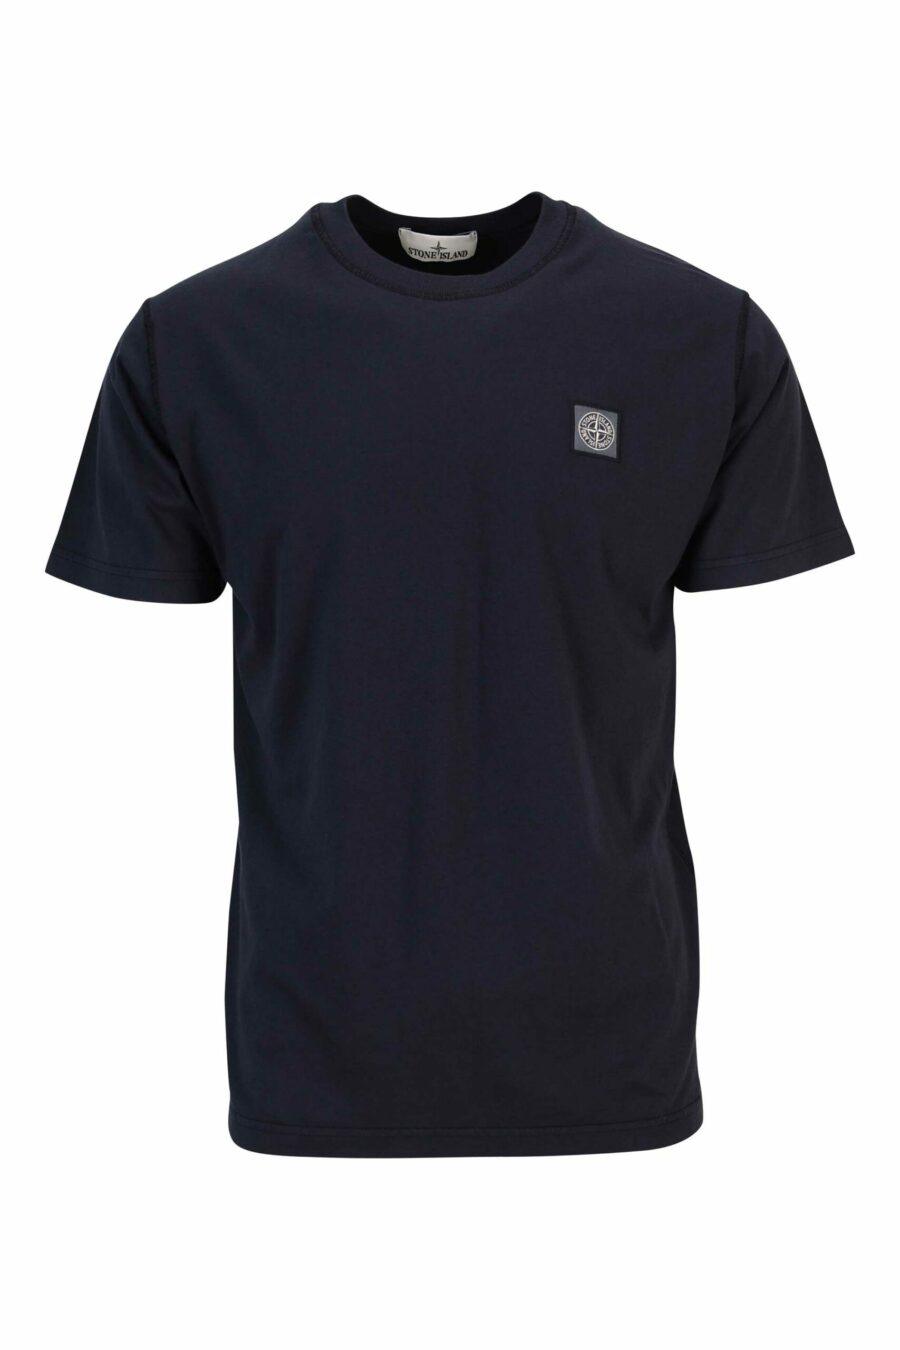 T-shirt bleu foncé avec mini-logo boussole - 8052572905155 à l'échelle